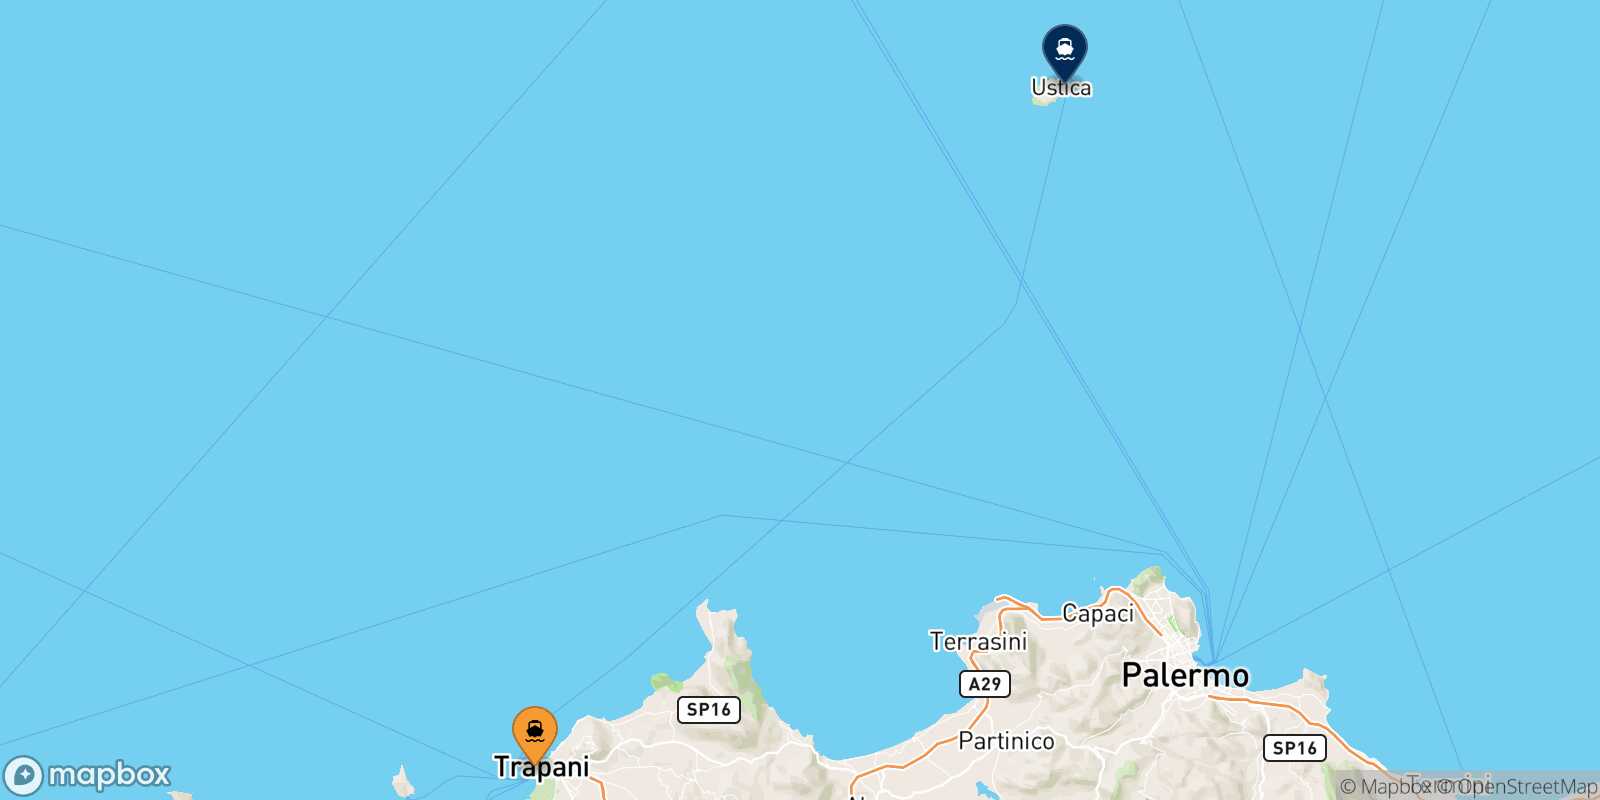 Trapani Ustica route map